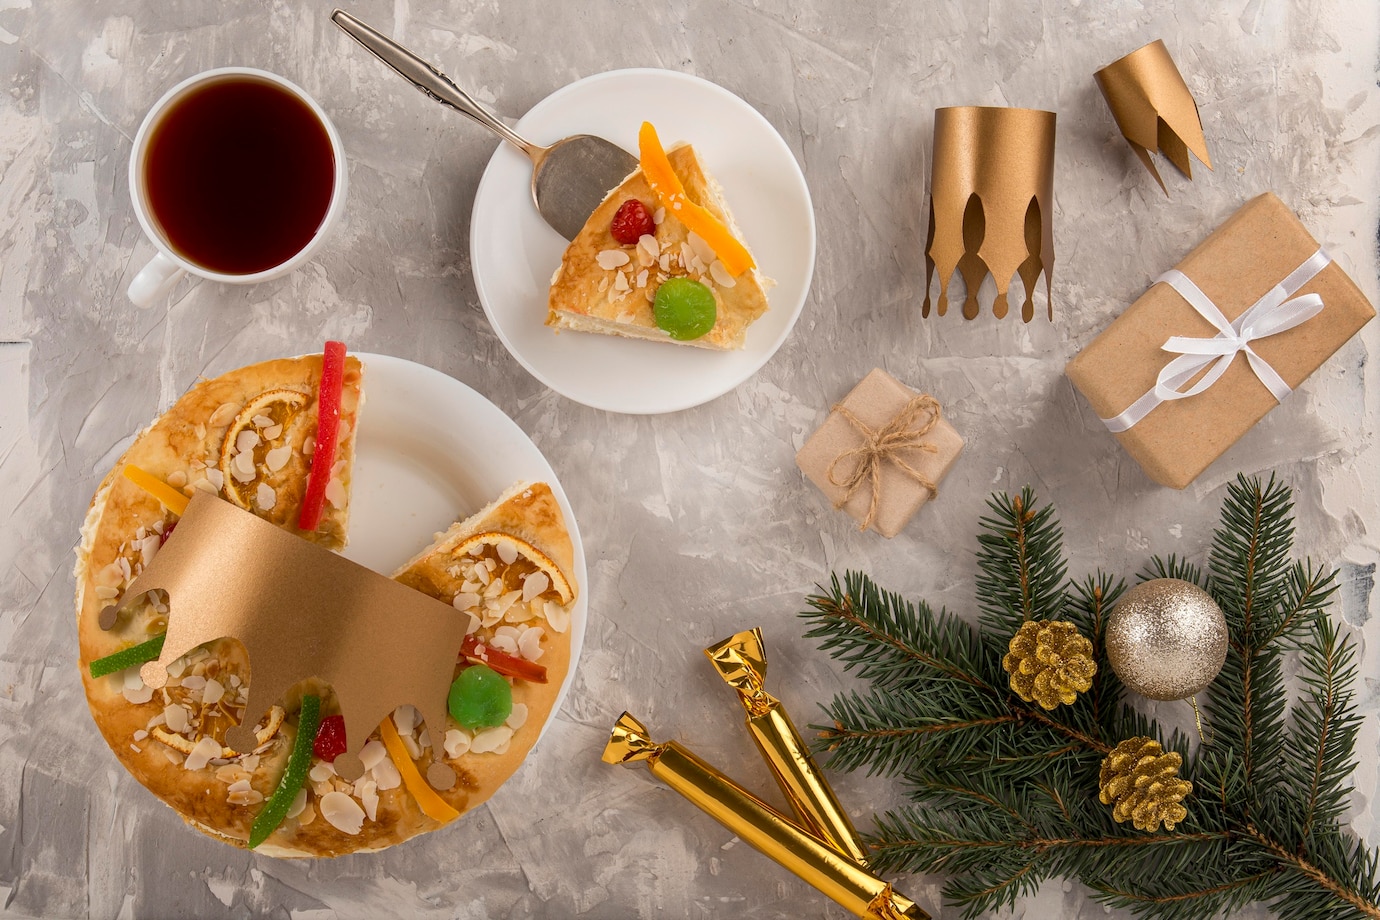 La imagen muestra una mesa con adornos de navidad, una taza de café y un roscón de reyes de color amarillo, en forma de anillo grande y adornado con fruta escarchada y azúcar. 